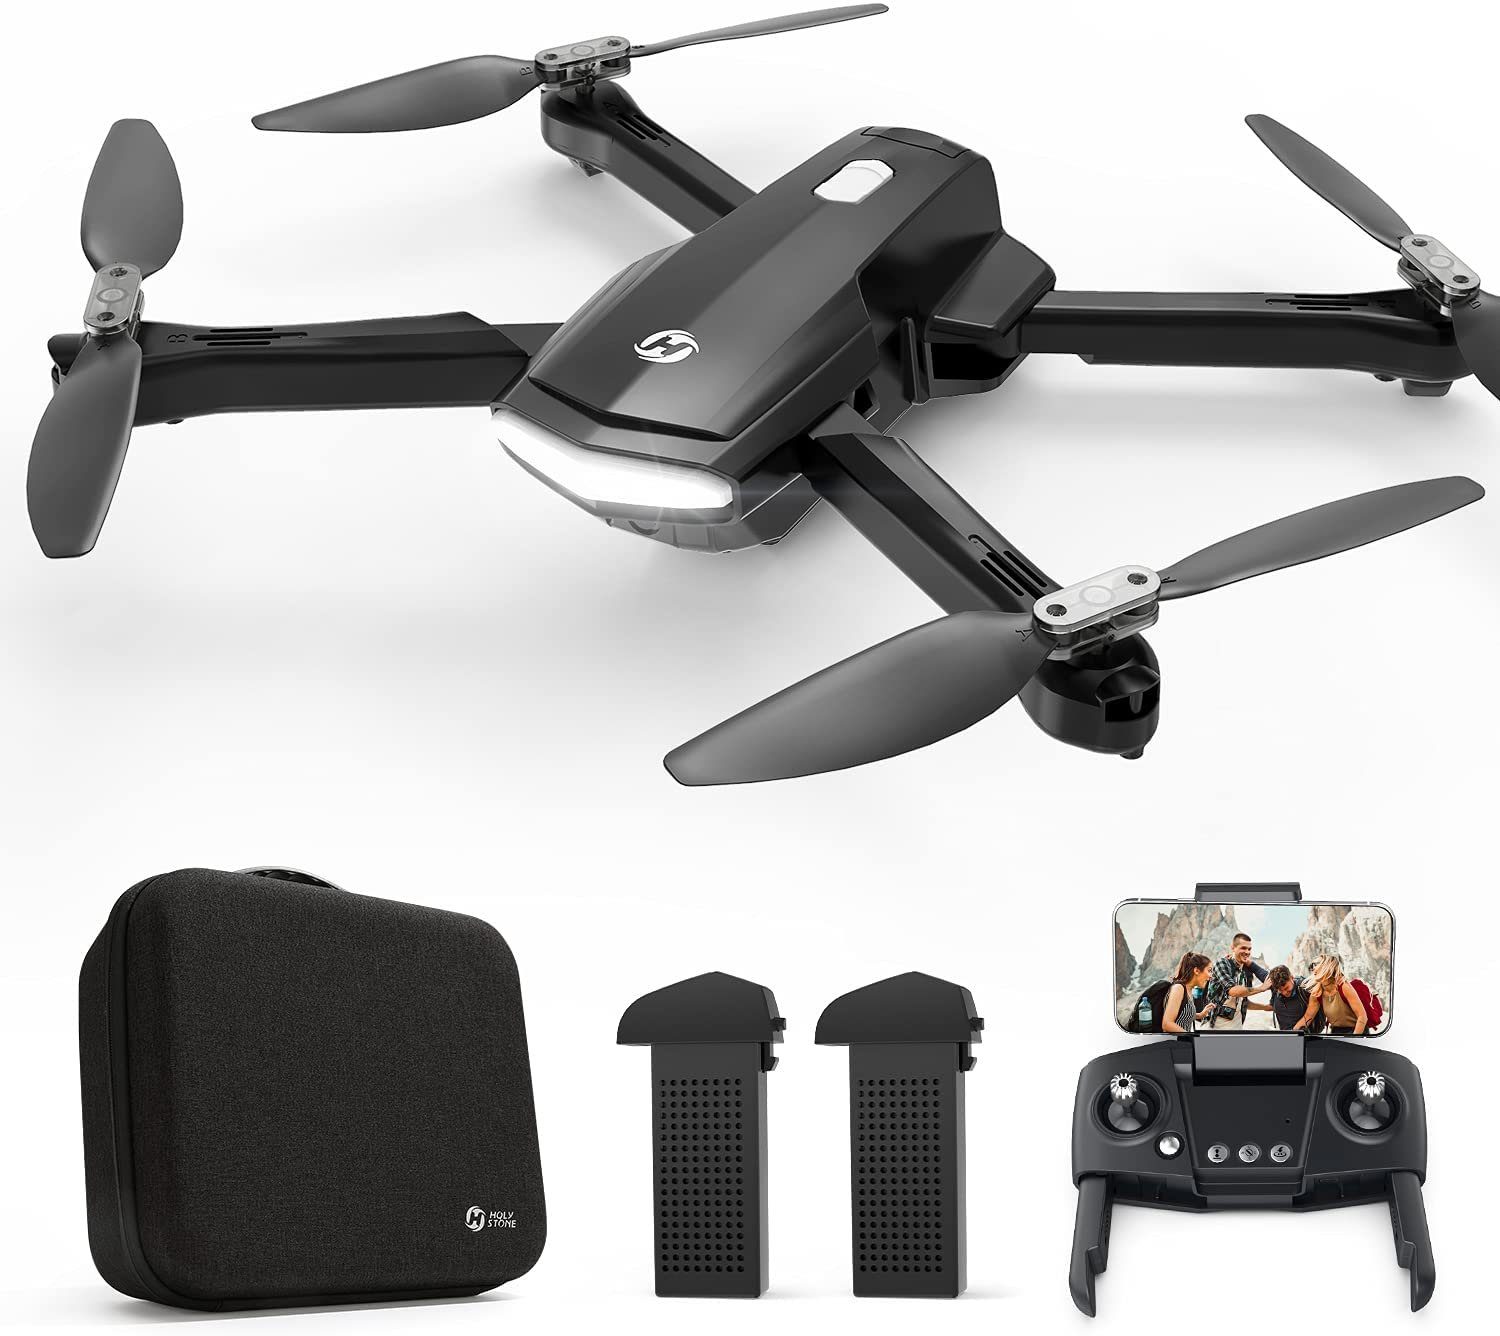 Fangqi »Holy Stone HS260 Faltbare Drohnen-WLAN-Kamera 1080P HD RC  Quadrocopter 2 Batterien, maximale Flugdistanz 100 m, mit Tragetasche,  geeignet für Anfänger, Geschenke für Kinder und Erwachsene« Drohne online  kaufen | OTTO